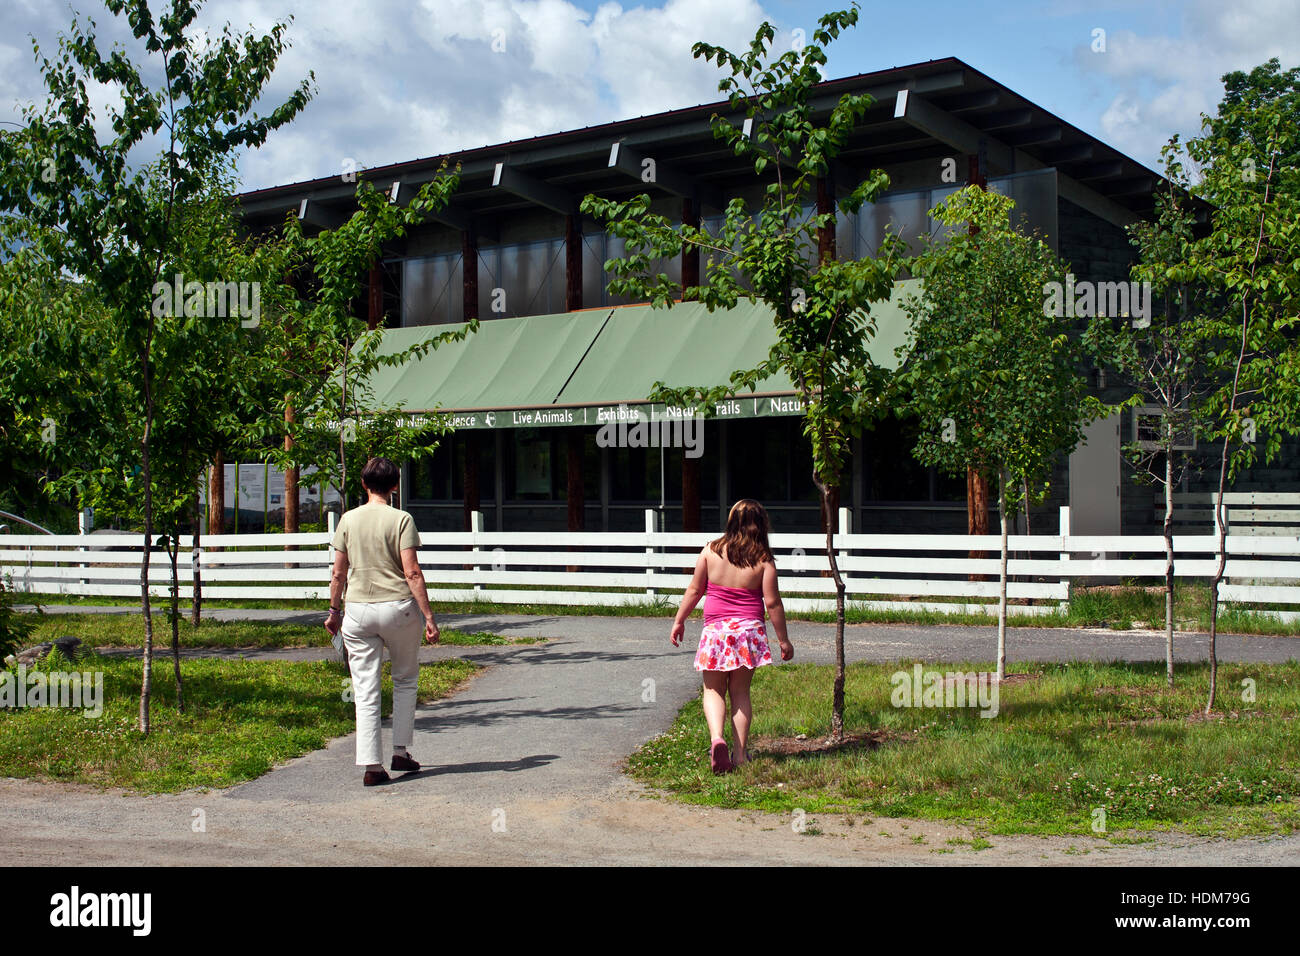 Vermont Institute of Natural Sciences, Quechee, Vermont, USA. Une femme et enfant près de l'édifice principal de vins. Banque D'Images